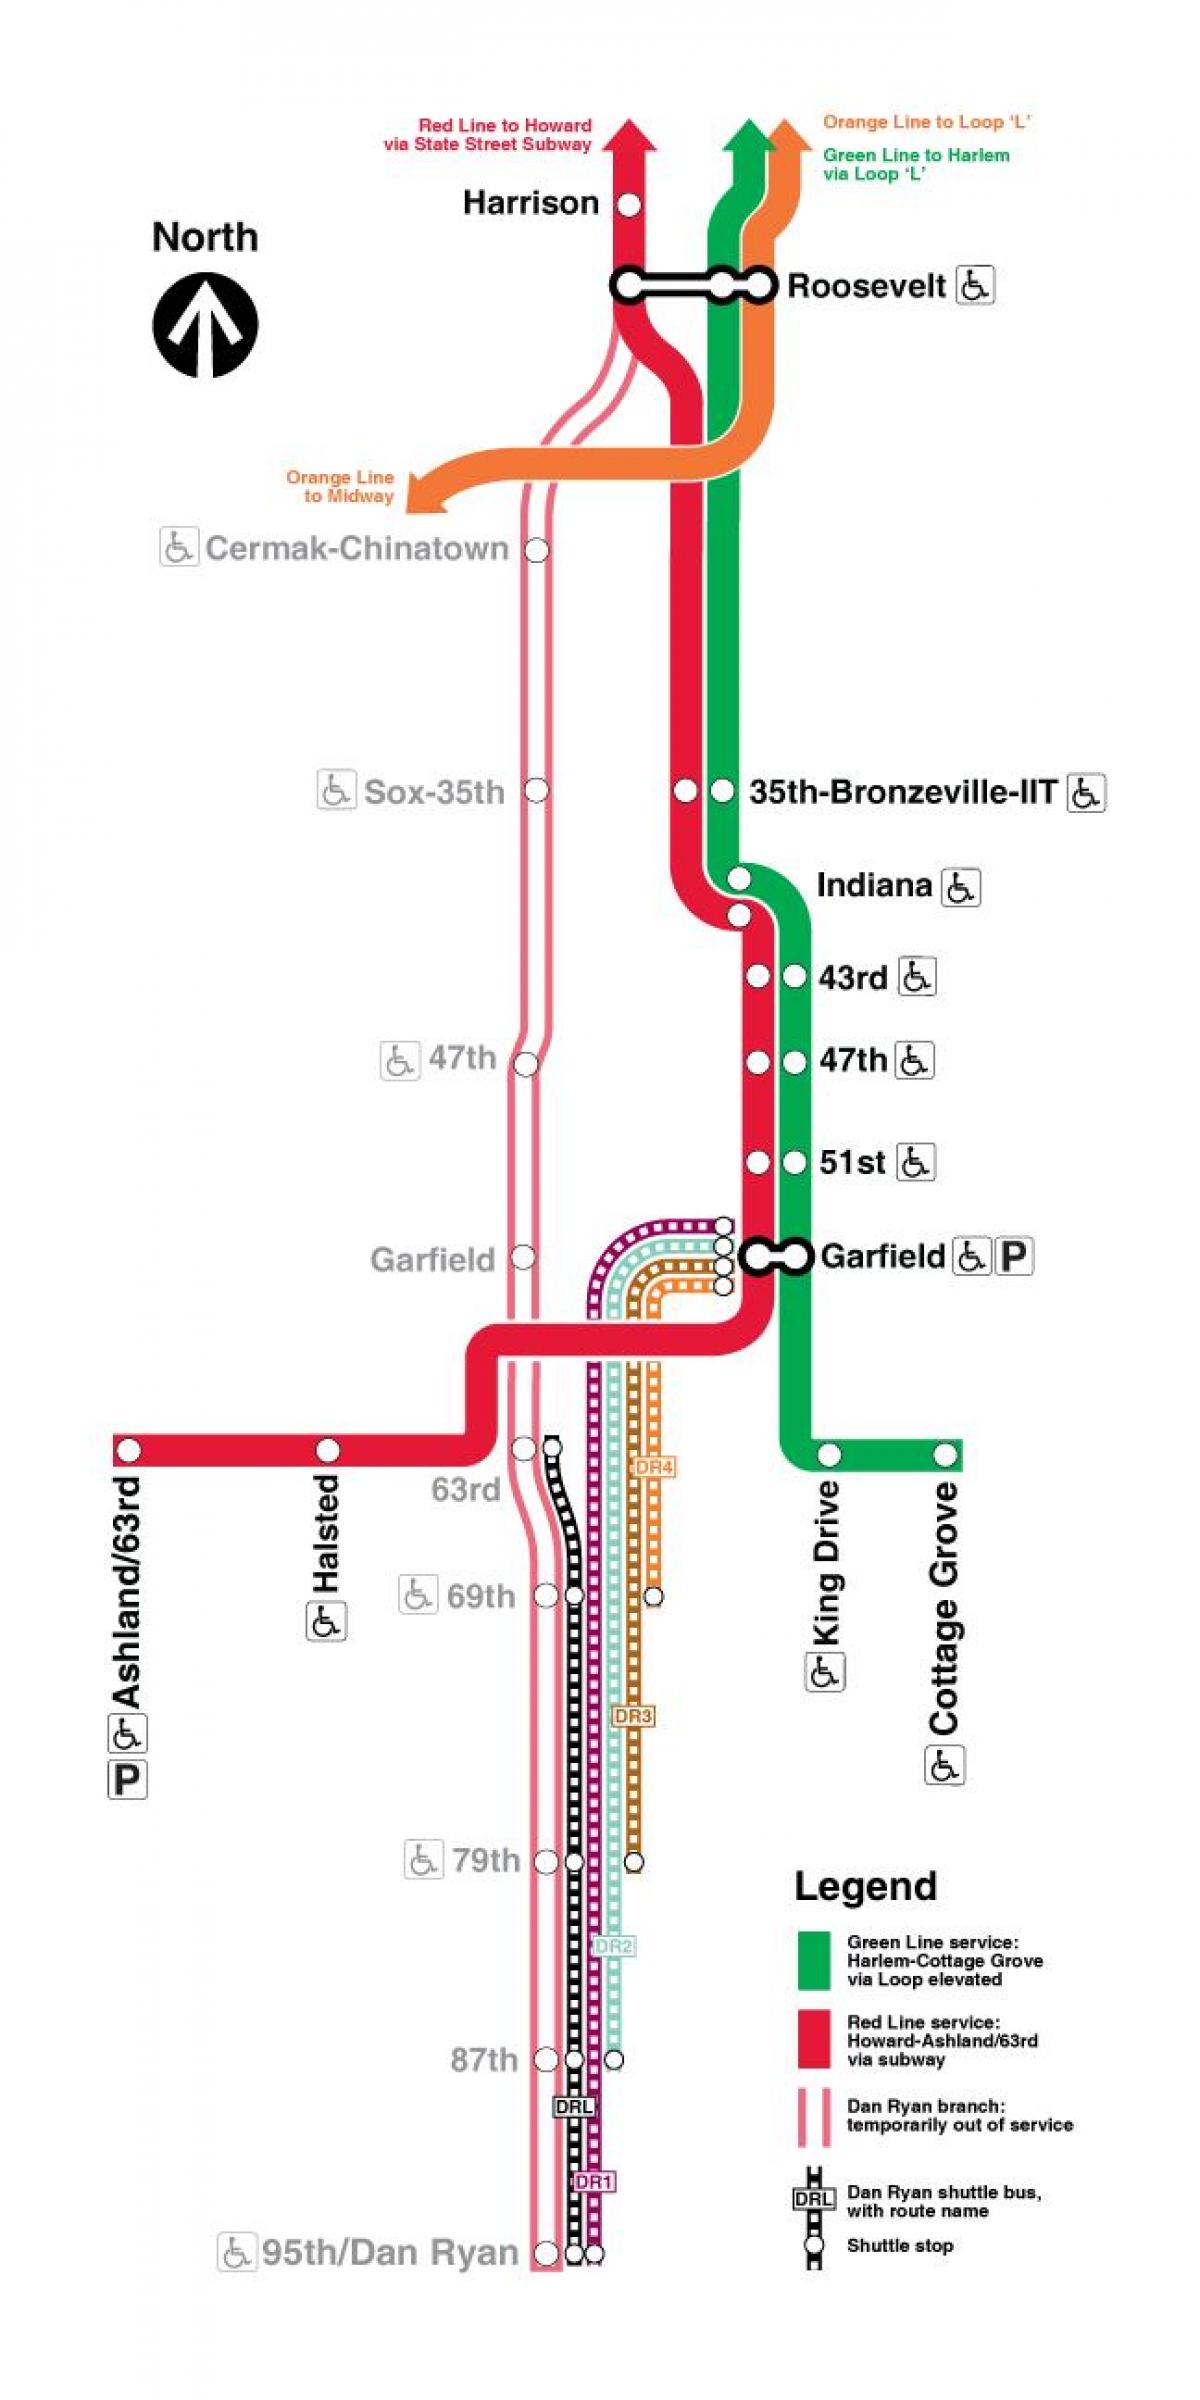 χάρτης της κόκκινης γραμμής στο Σικάγο